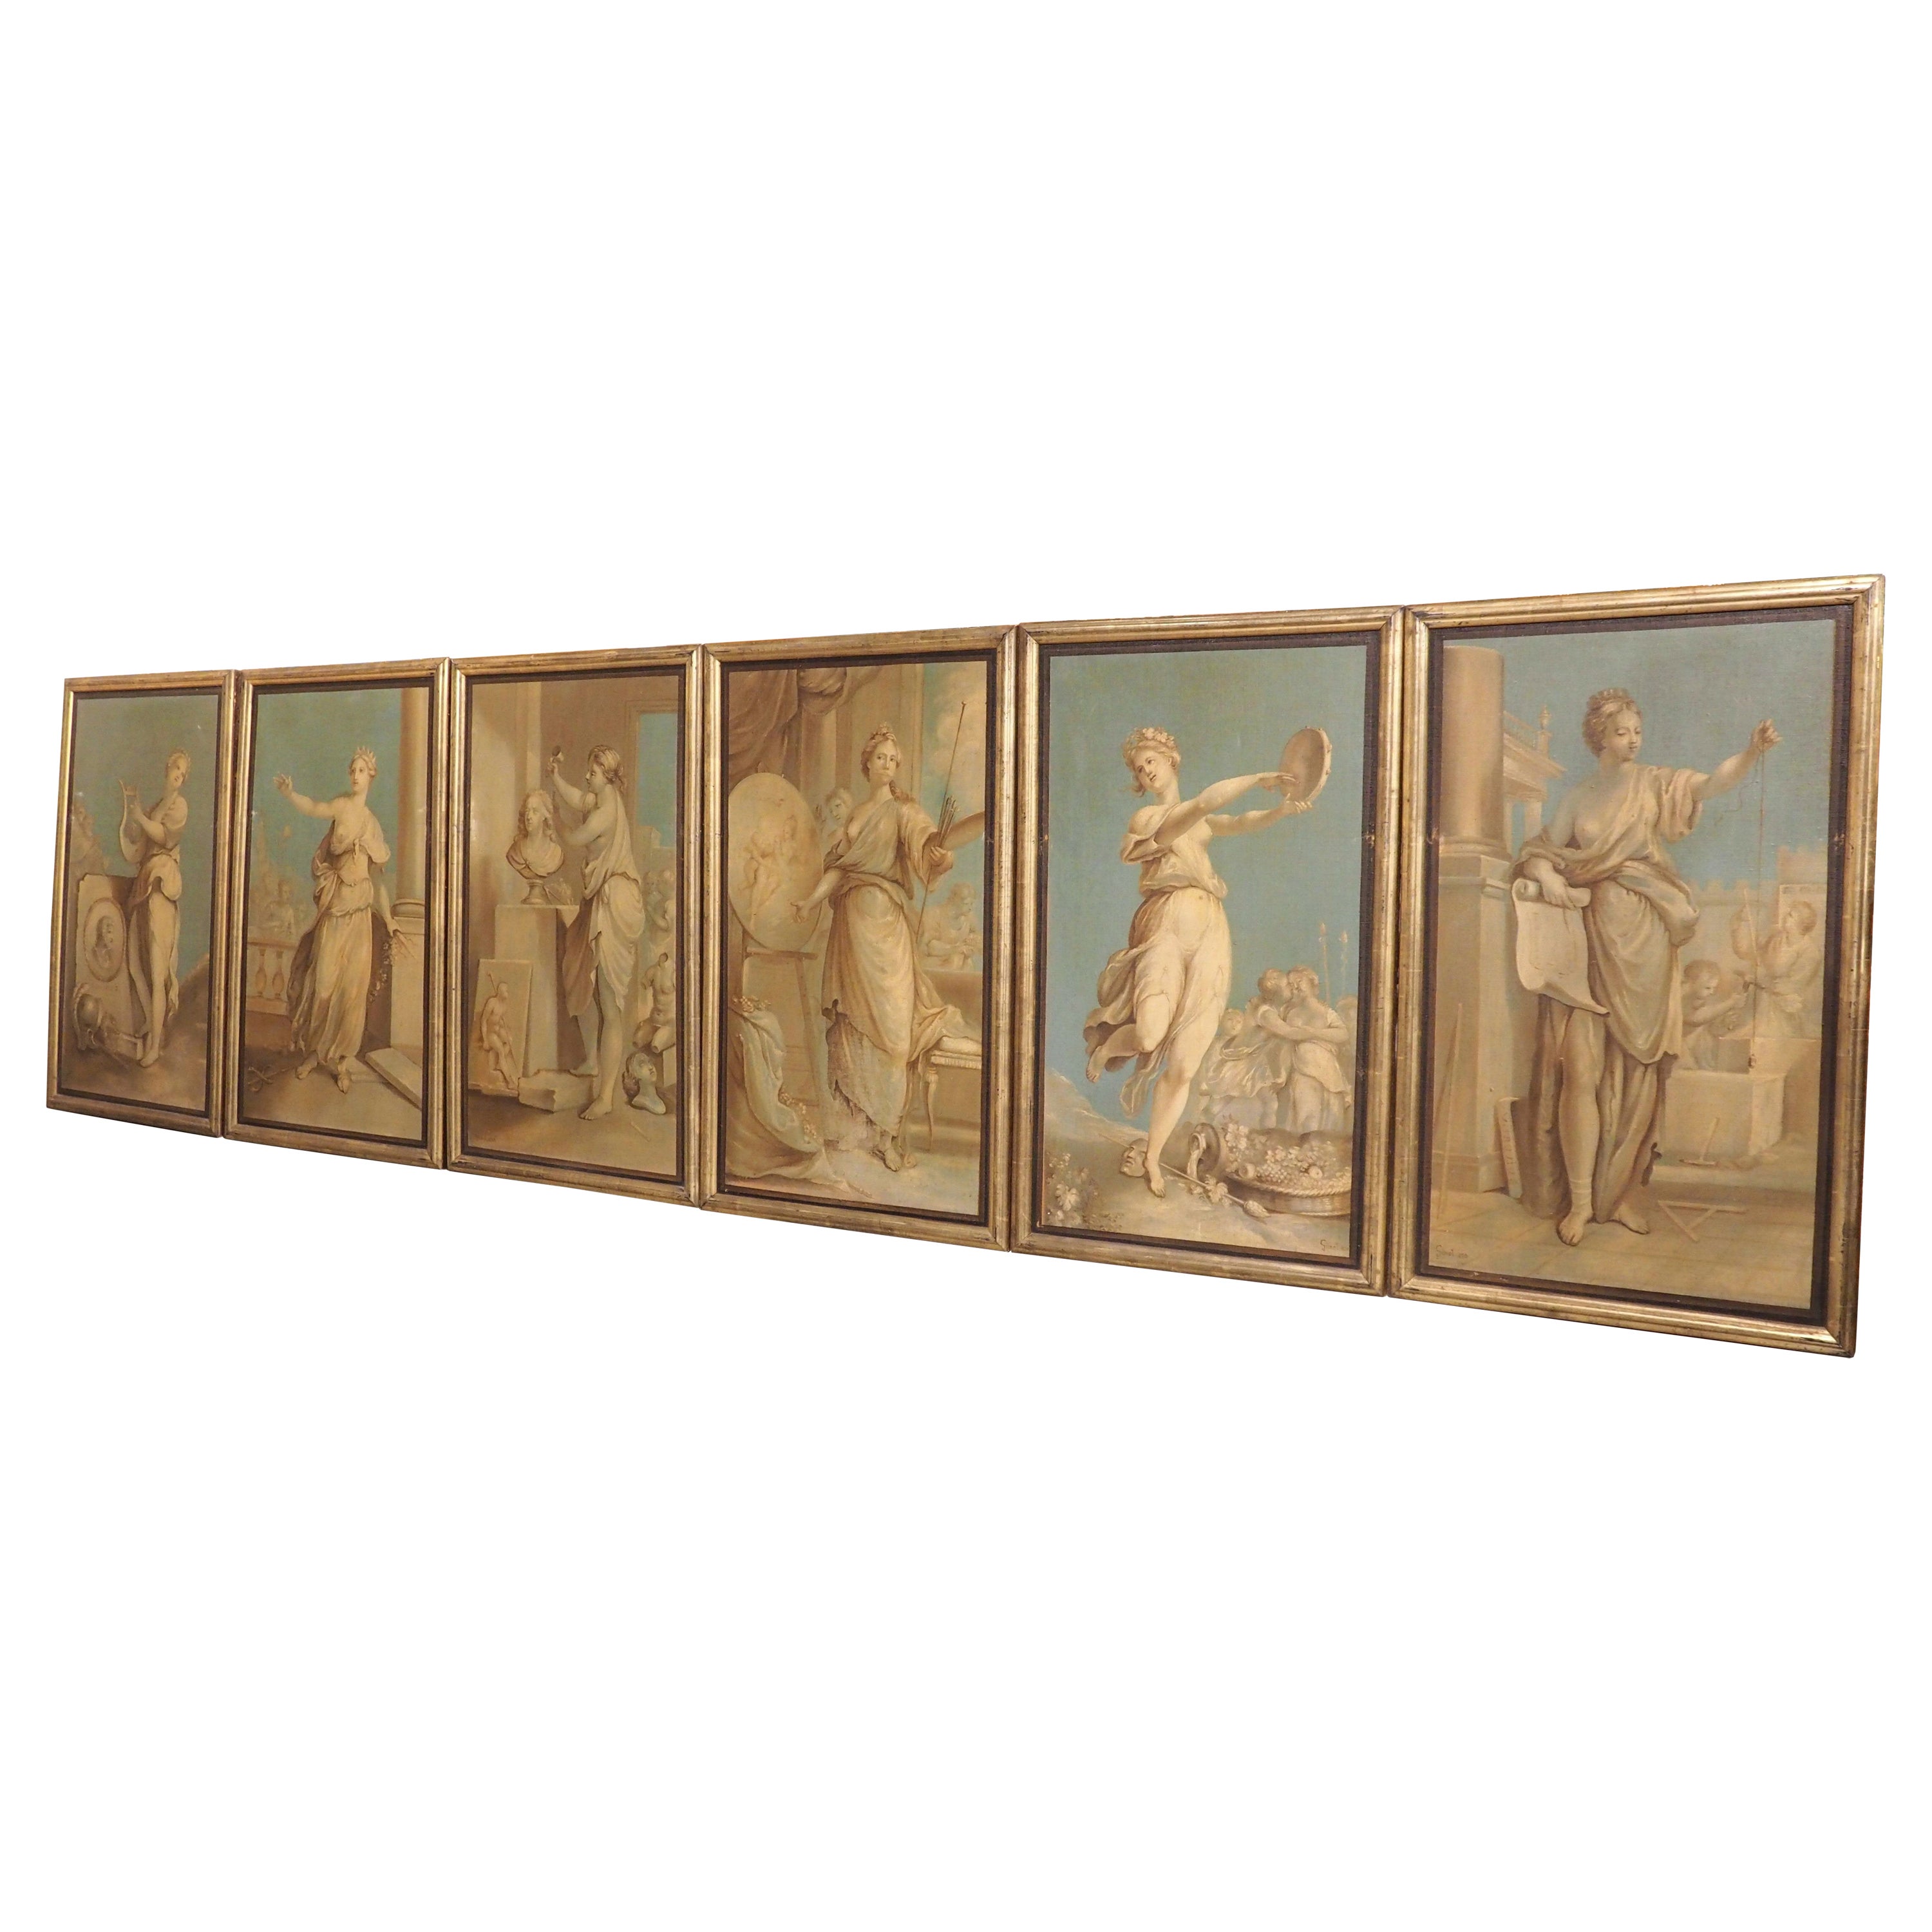 Set von sechs neoklassizistischen Gemälden, Öl auf Leinwand, datiert 1830